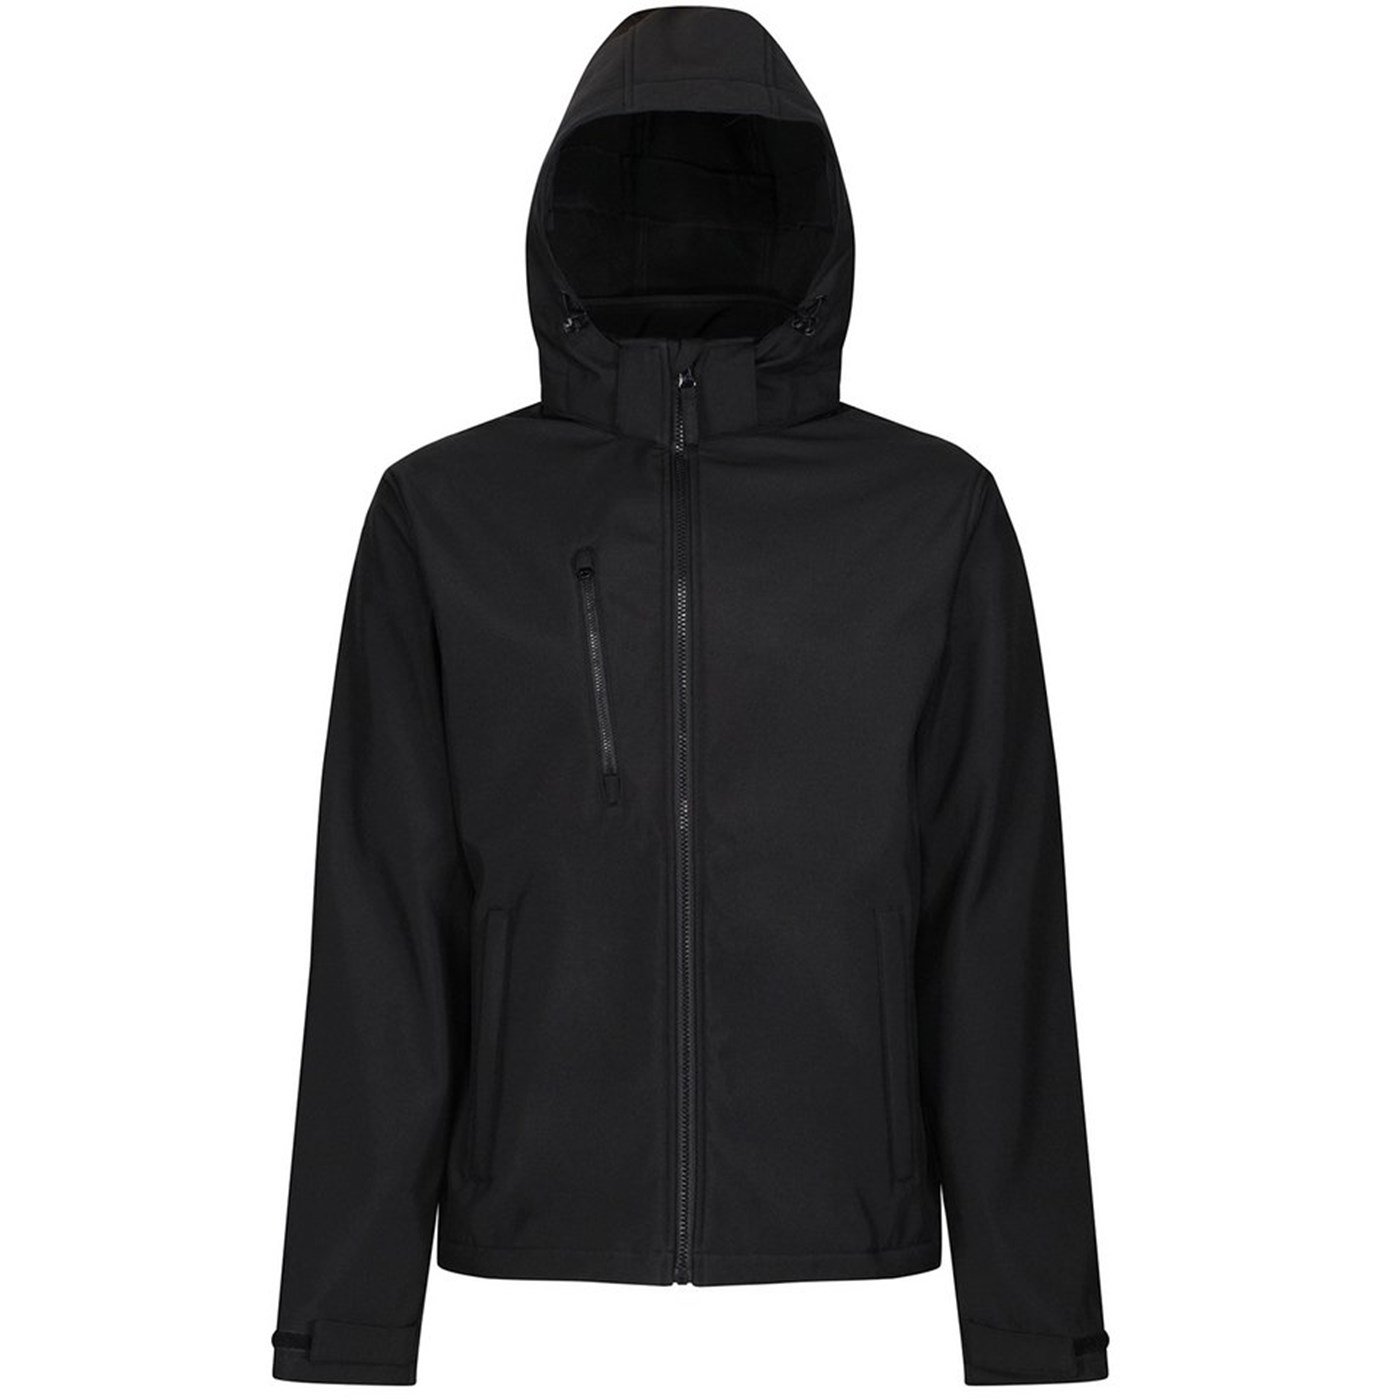 Regatta Venturer 3-layer hooded softshell jacket RG152